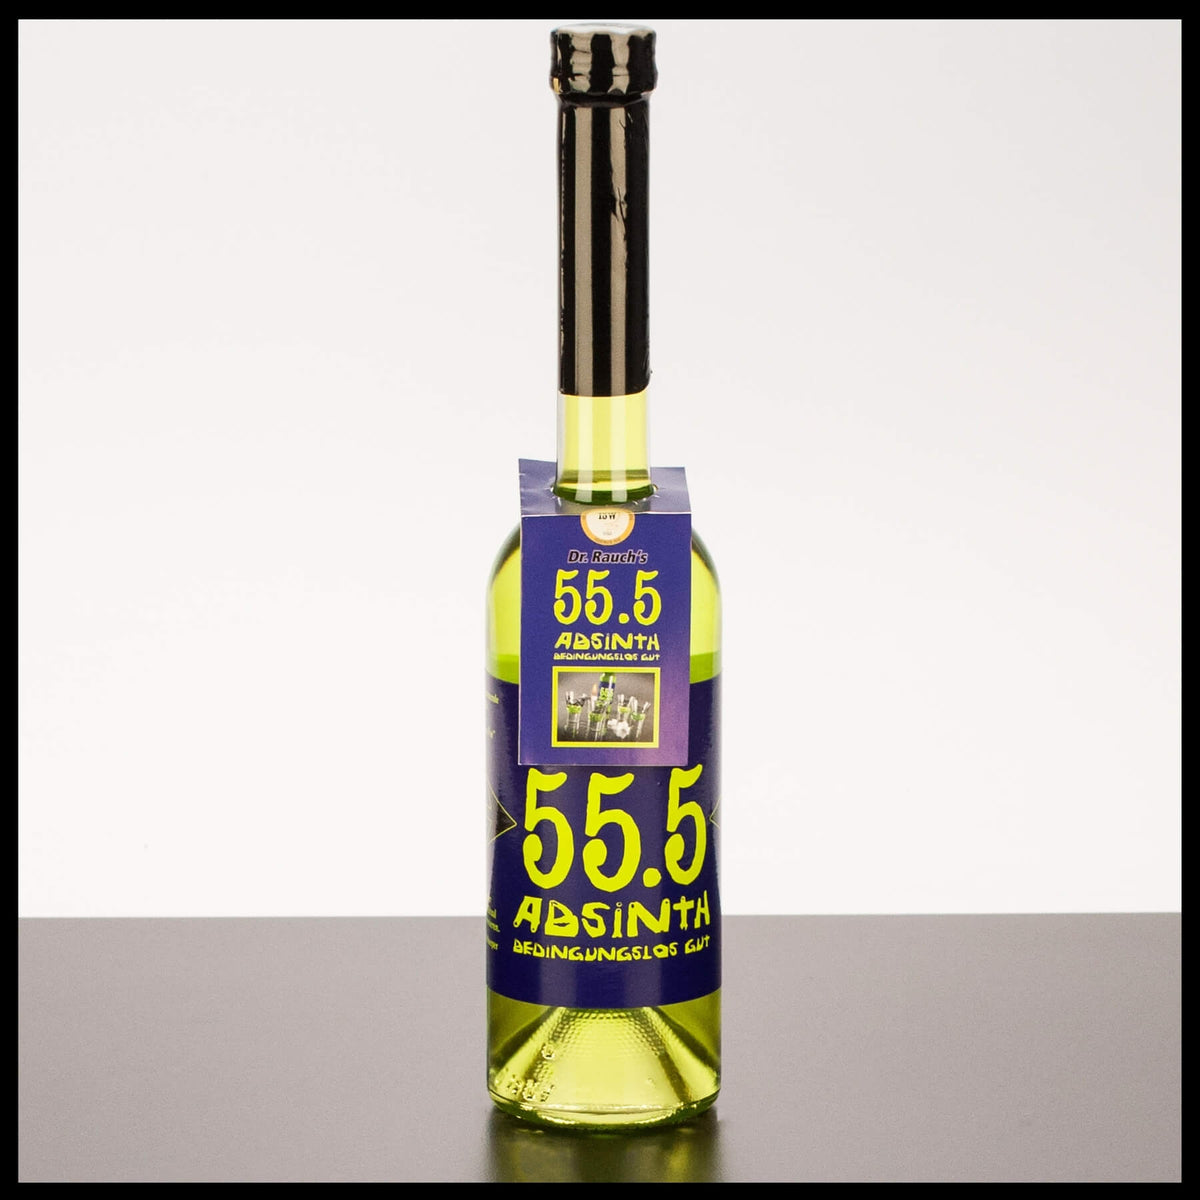 Absinth 55.5 0,5L - 55,5% Vol. - Trinklusiv